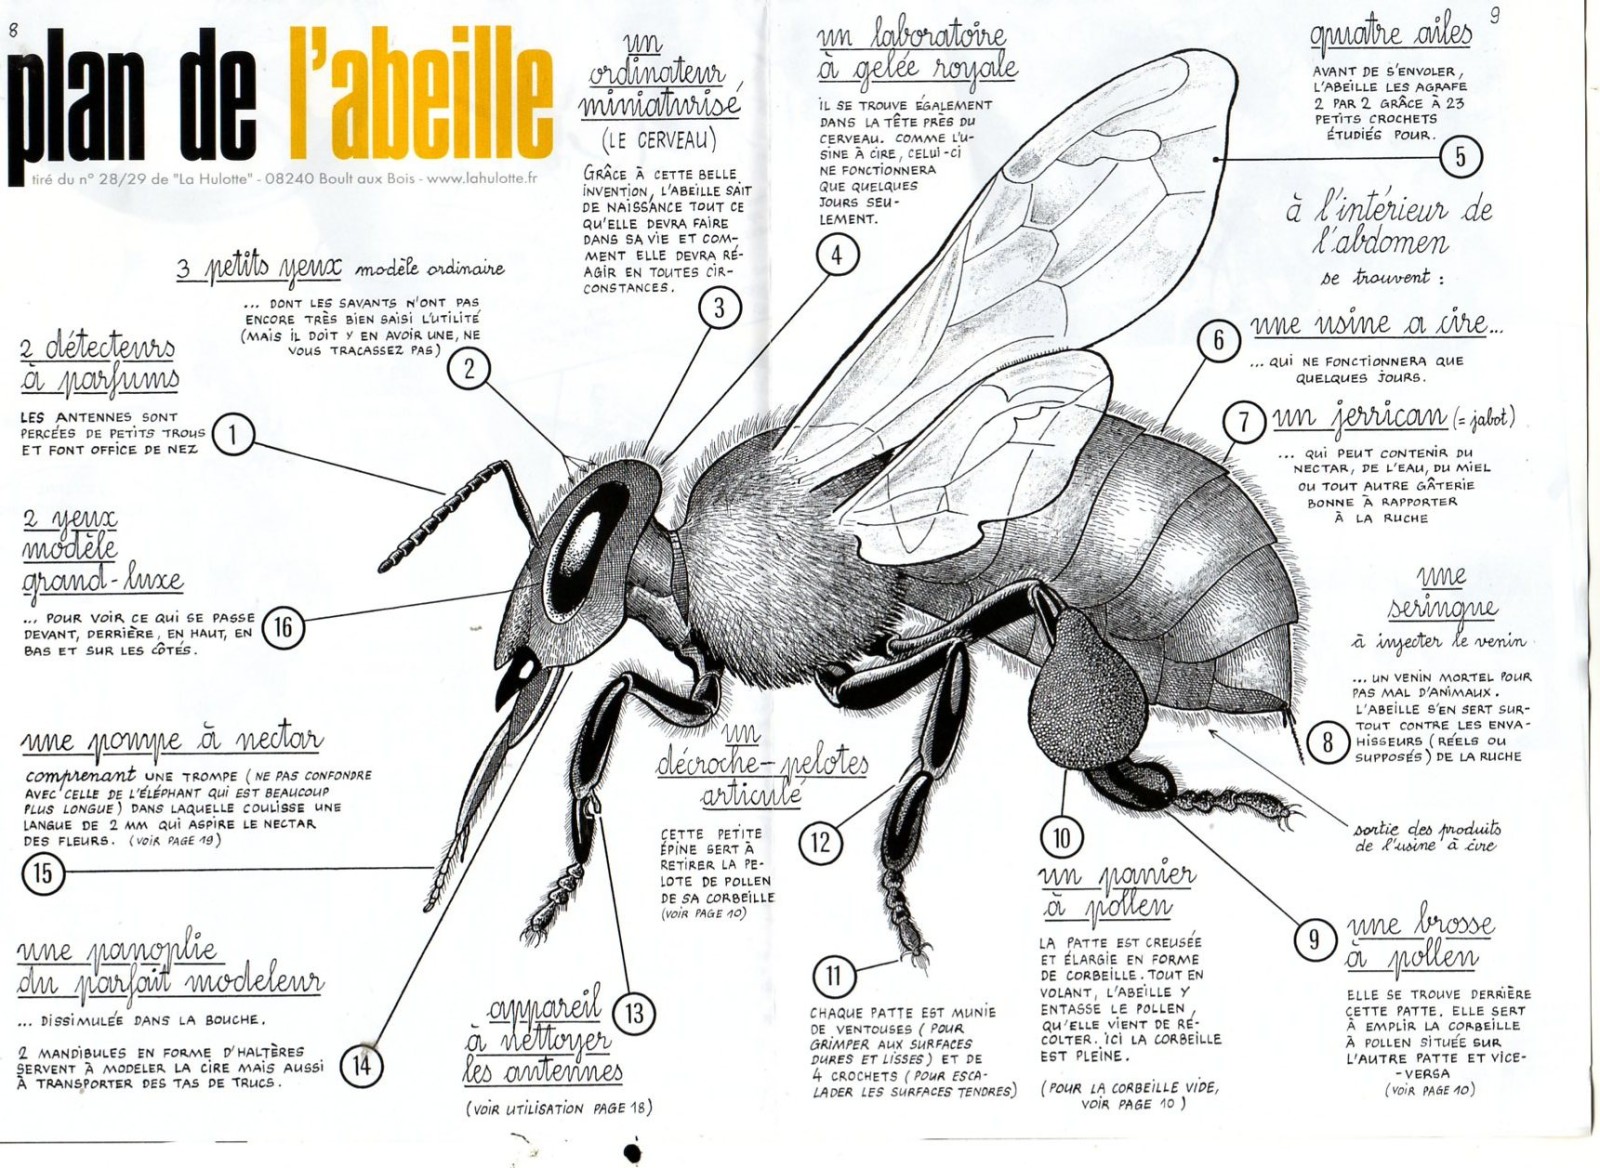 Plans de l'abeille Voici l'anatomie de nos vaillantes besognieuses ailée.